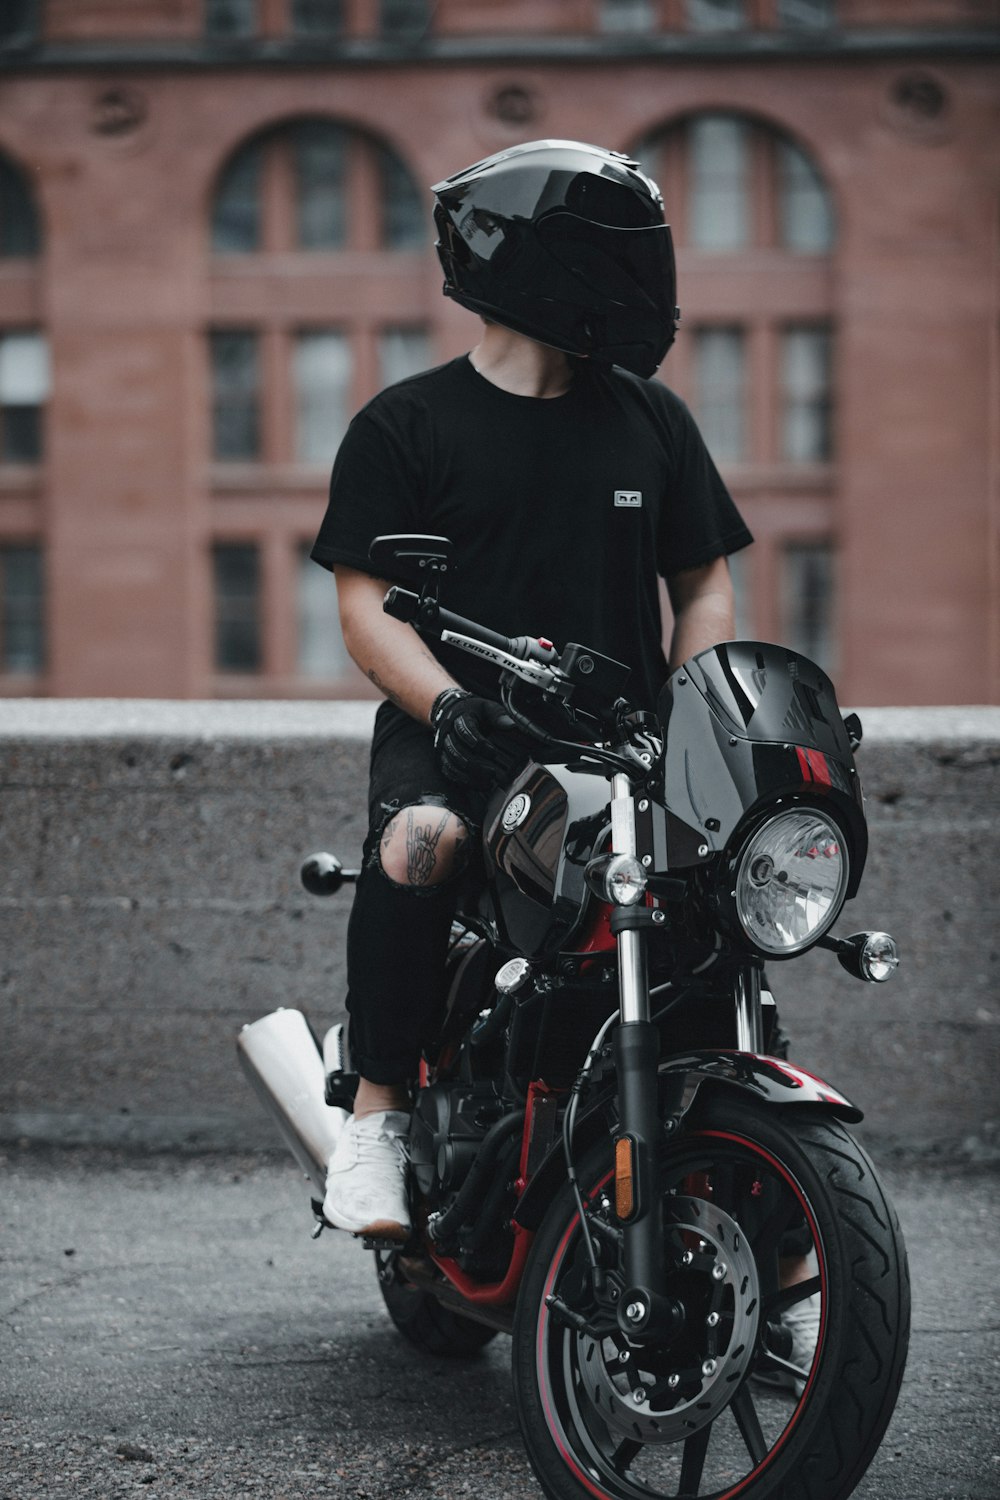 man in black crew neck t-shirt riding black motorcycle during daytime